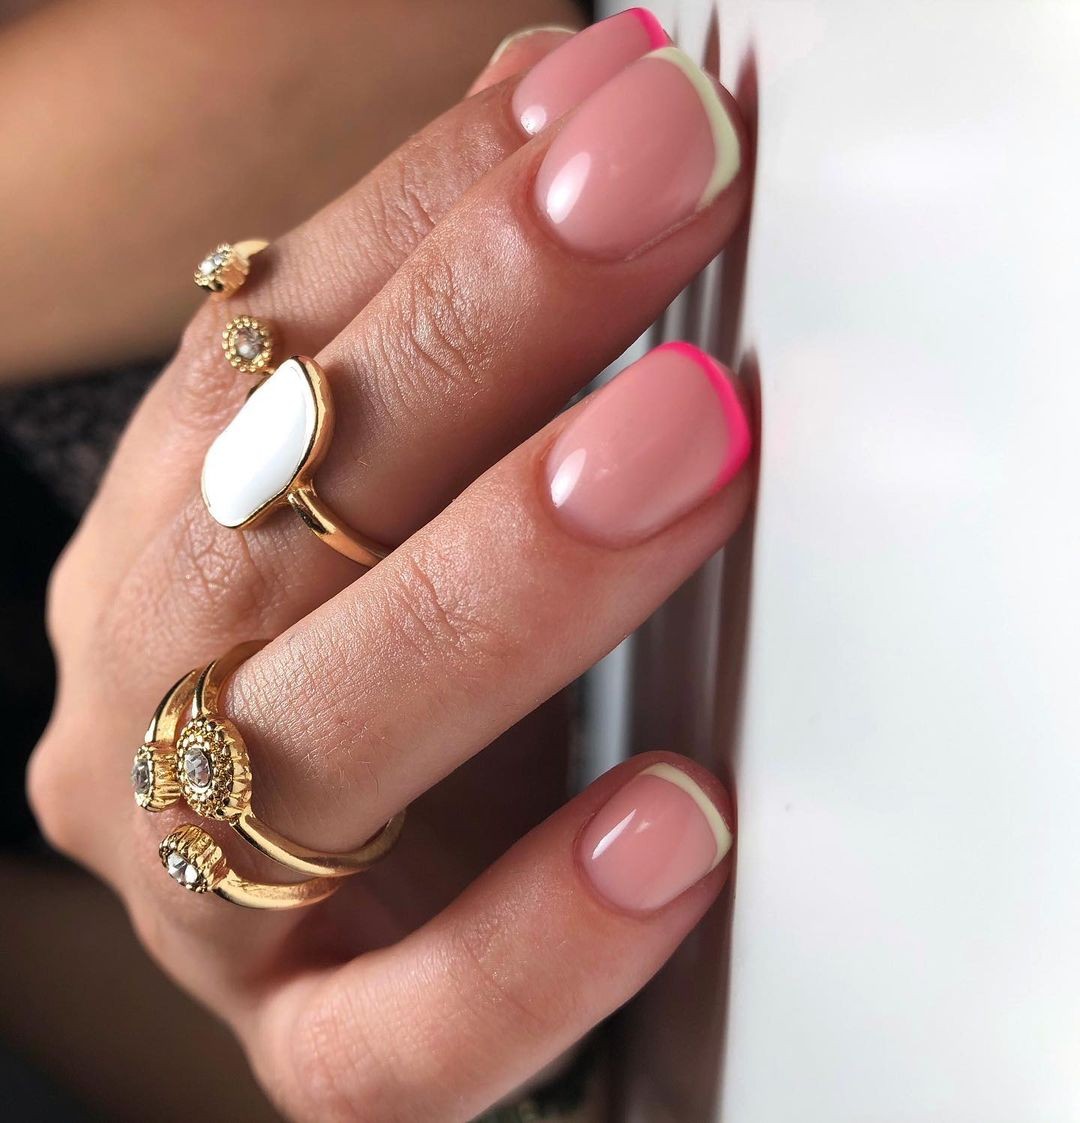 Francesinha minimalista é tendência de nail art (Foto: Reprodução/Instagram @tatianak_makeup)